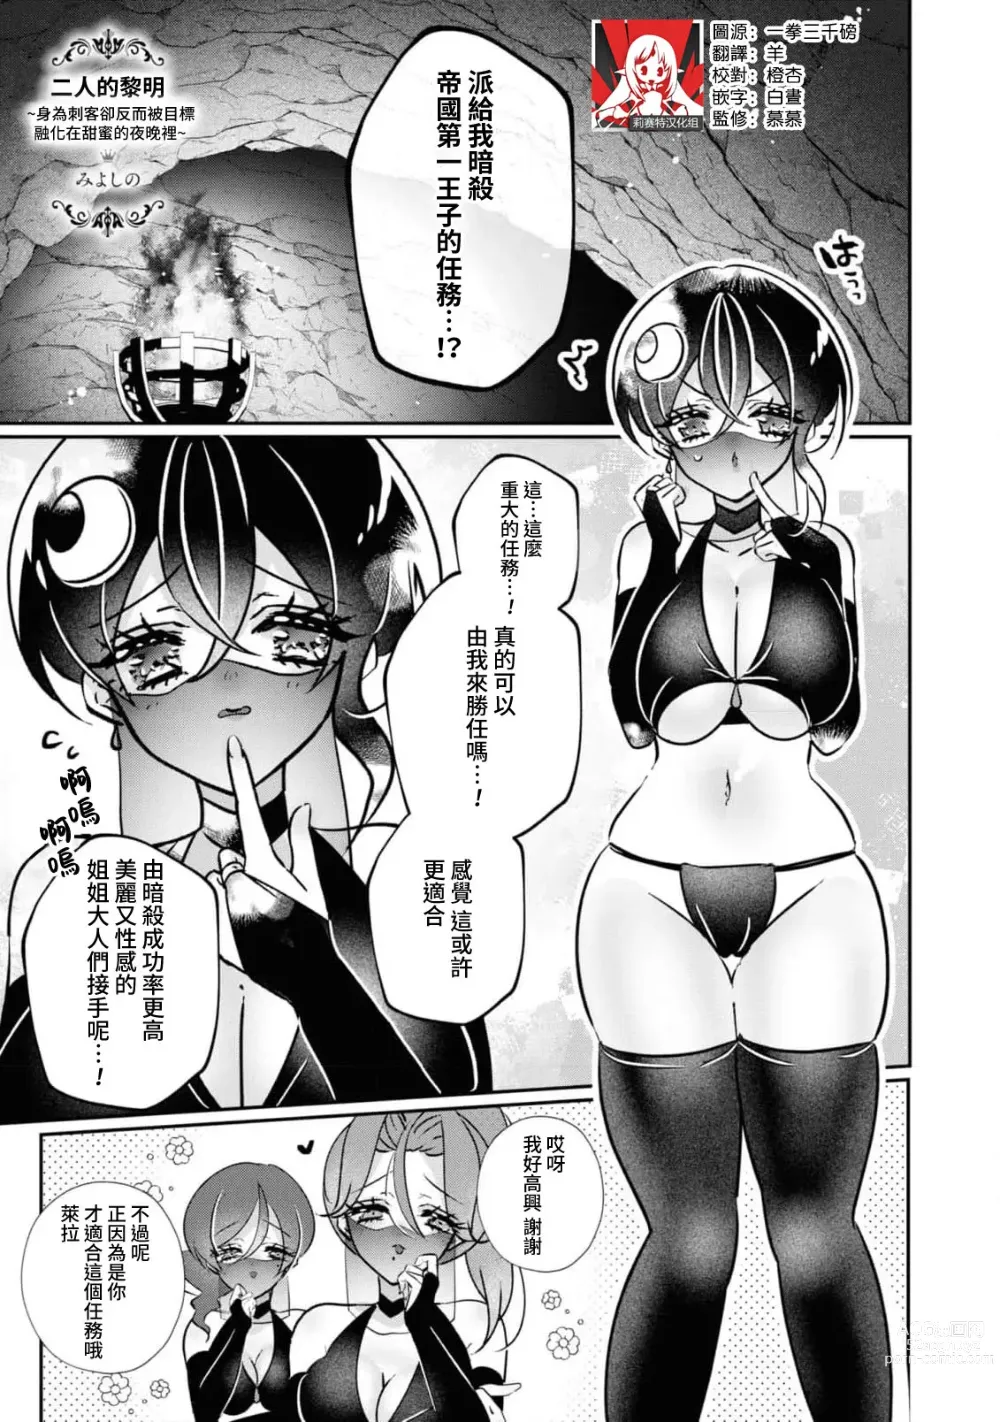 Page 1 of manga 二人的黎明~身為刺客卻反而被目標 融化在甜蜜的夜晚裡~